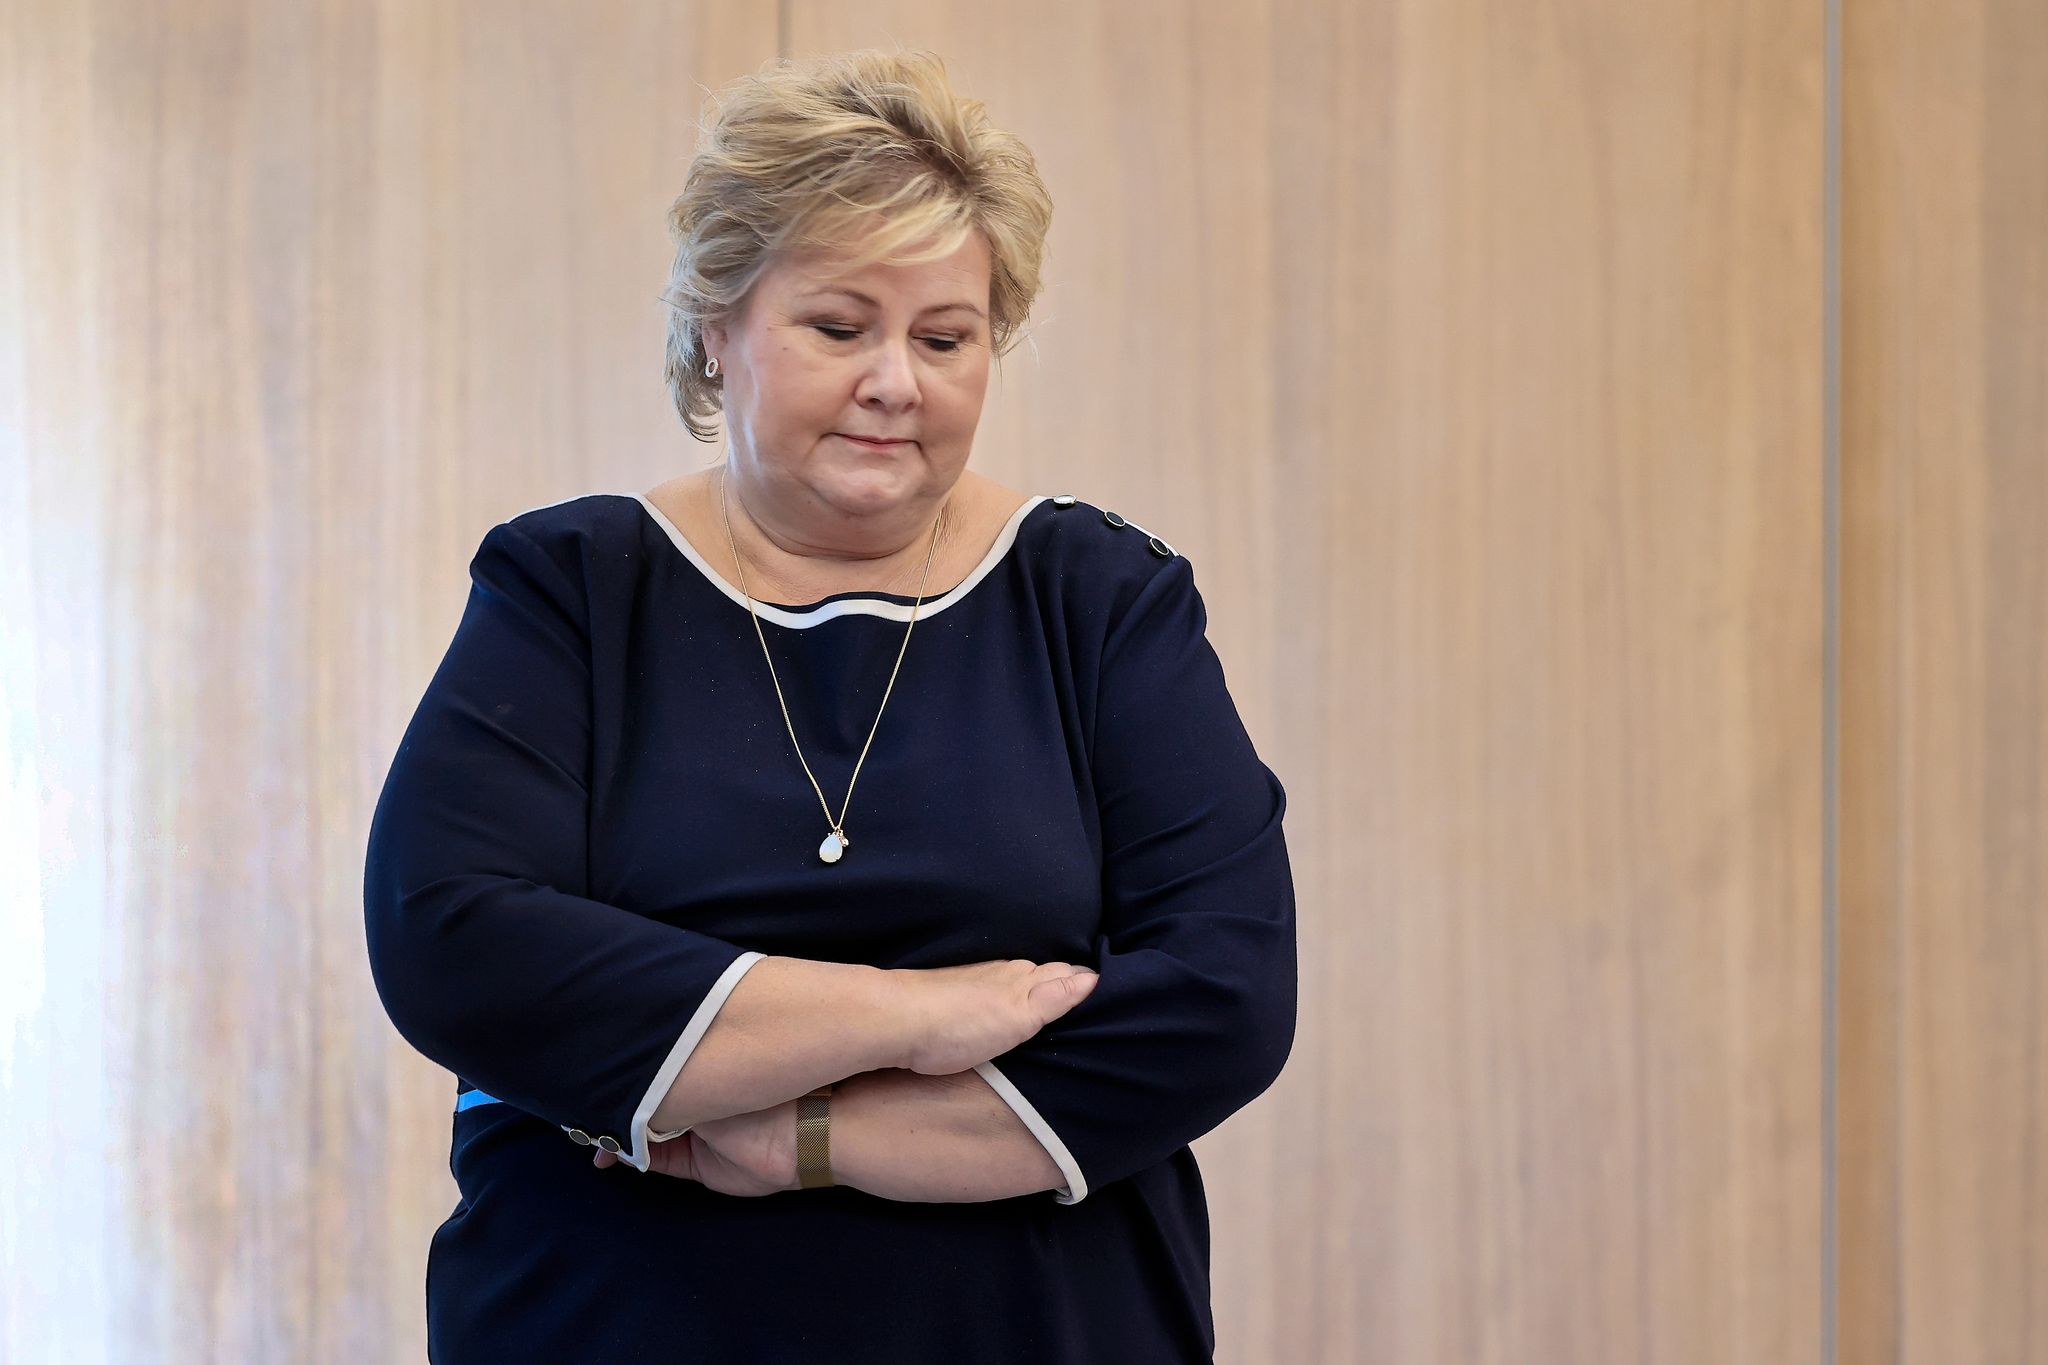 Statsminister Erna Solberg Botelagt For Koronabrudd